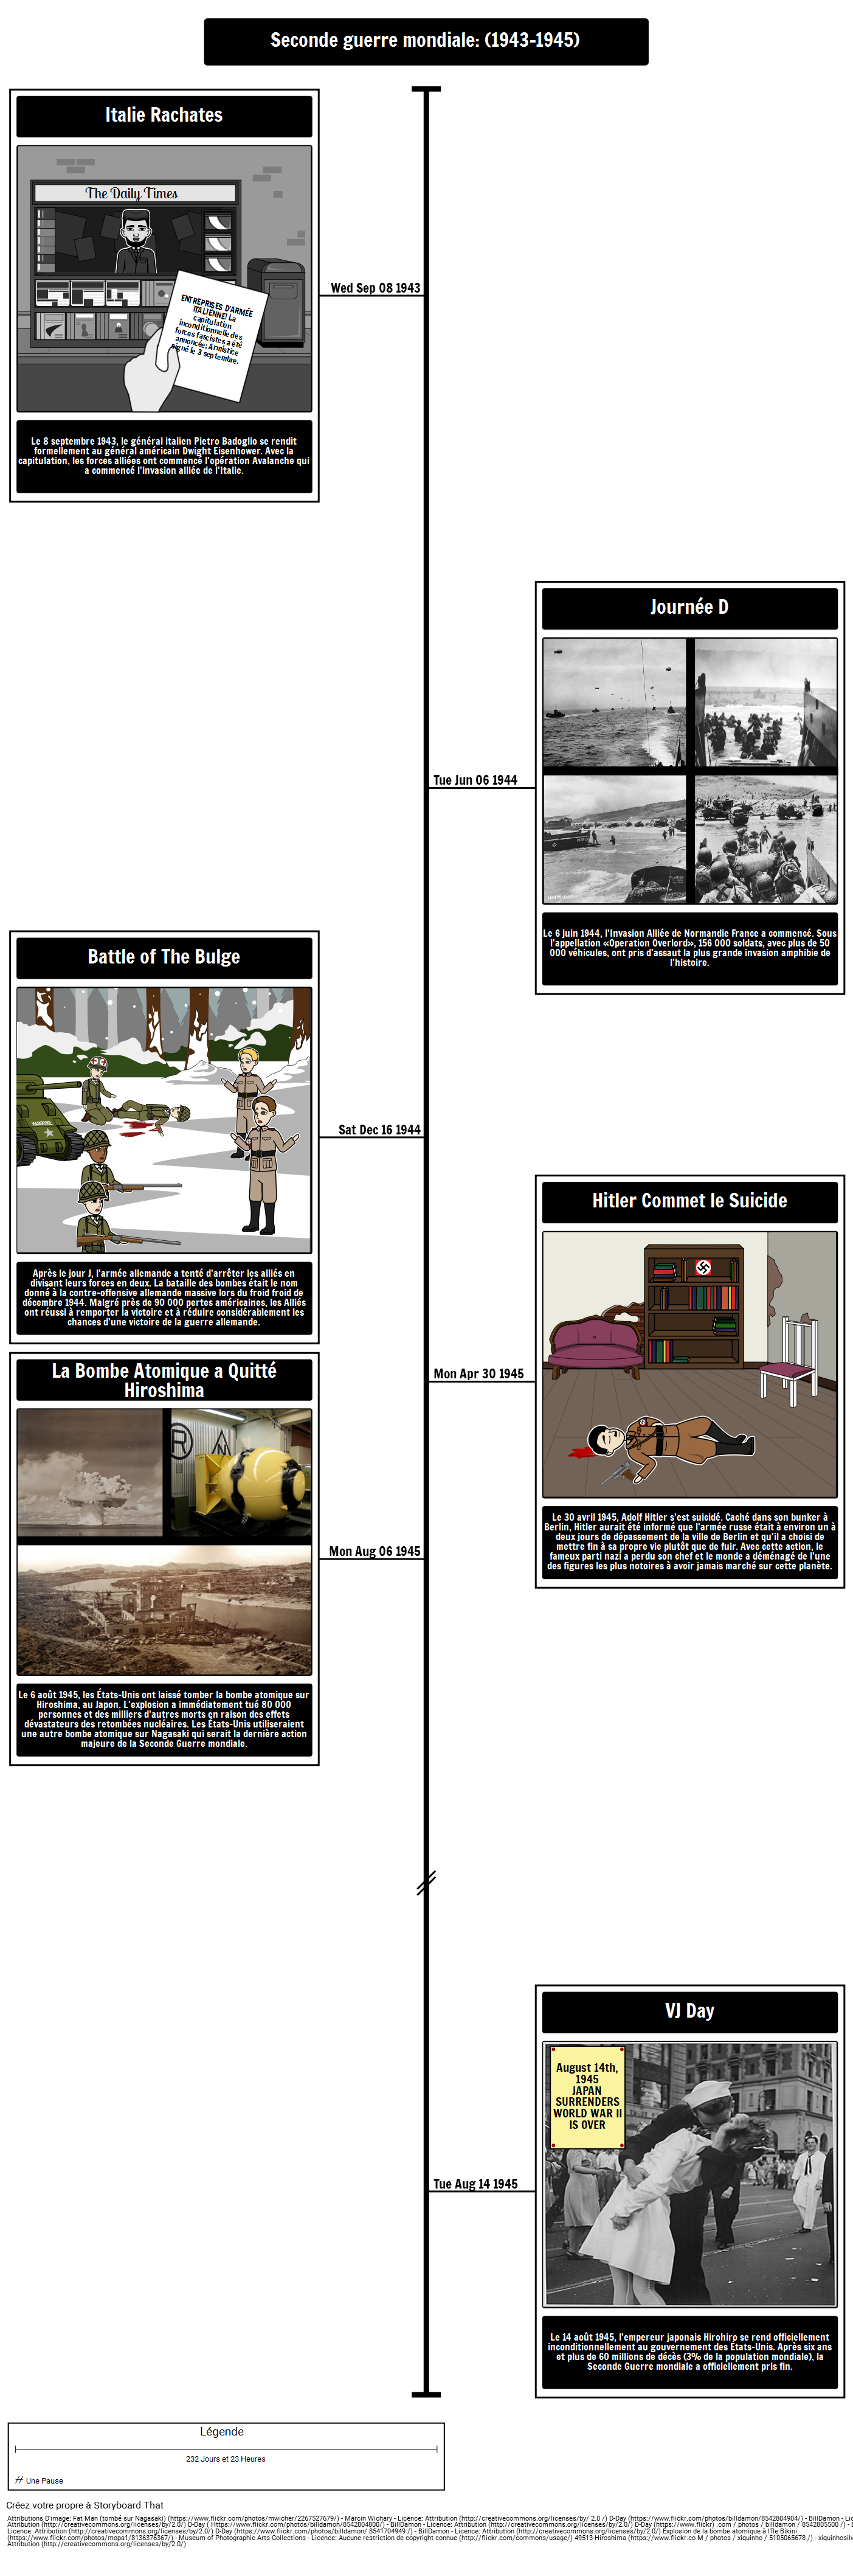 Chronologie de la Seconde Guerre mondiale (1943-1945)